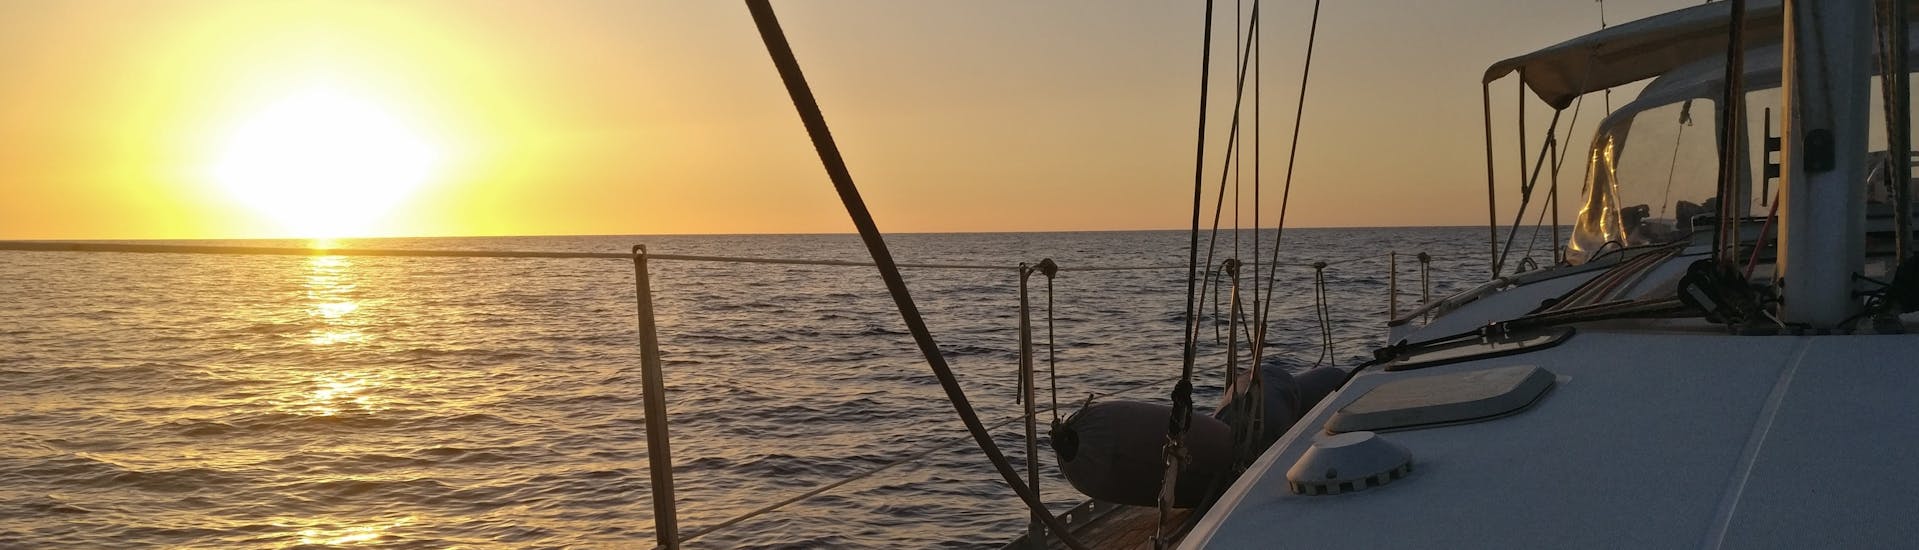 Vue de la mer au coucher du soleil depuis un bateau de Quarantesimo Parallelo Leuca pendant la balade privée en voilier de Leuca sur la Côte du Salento.